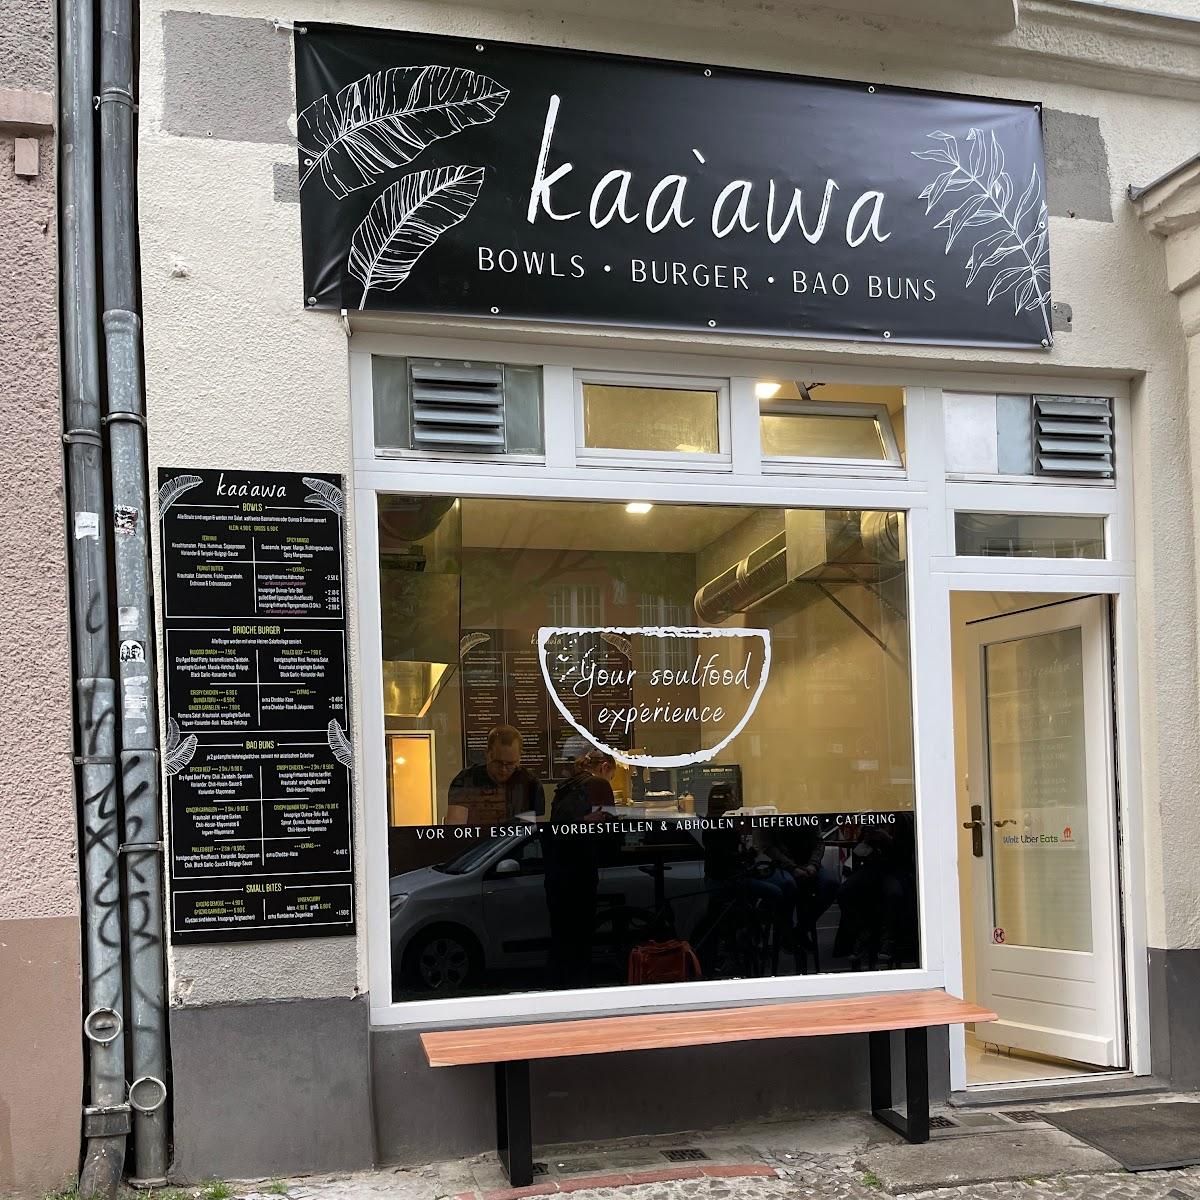 Restaurant "kaaawa Wilmersdorf Burger, Bowls & Bao Buns" in Berlin